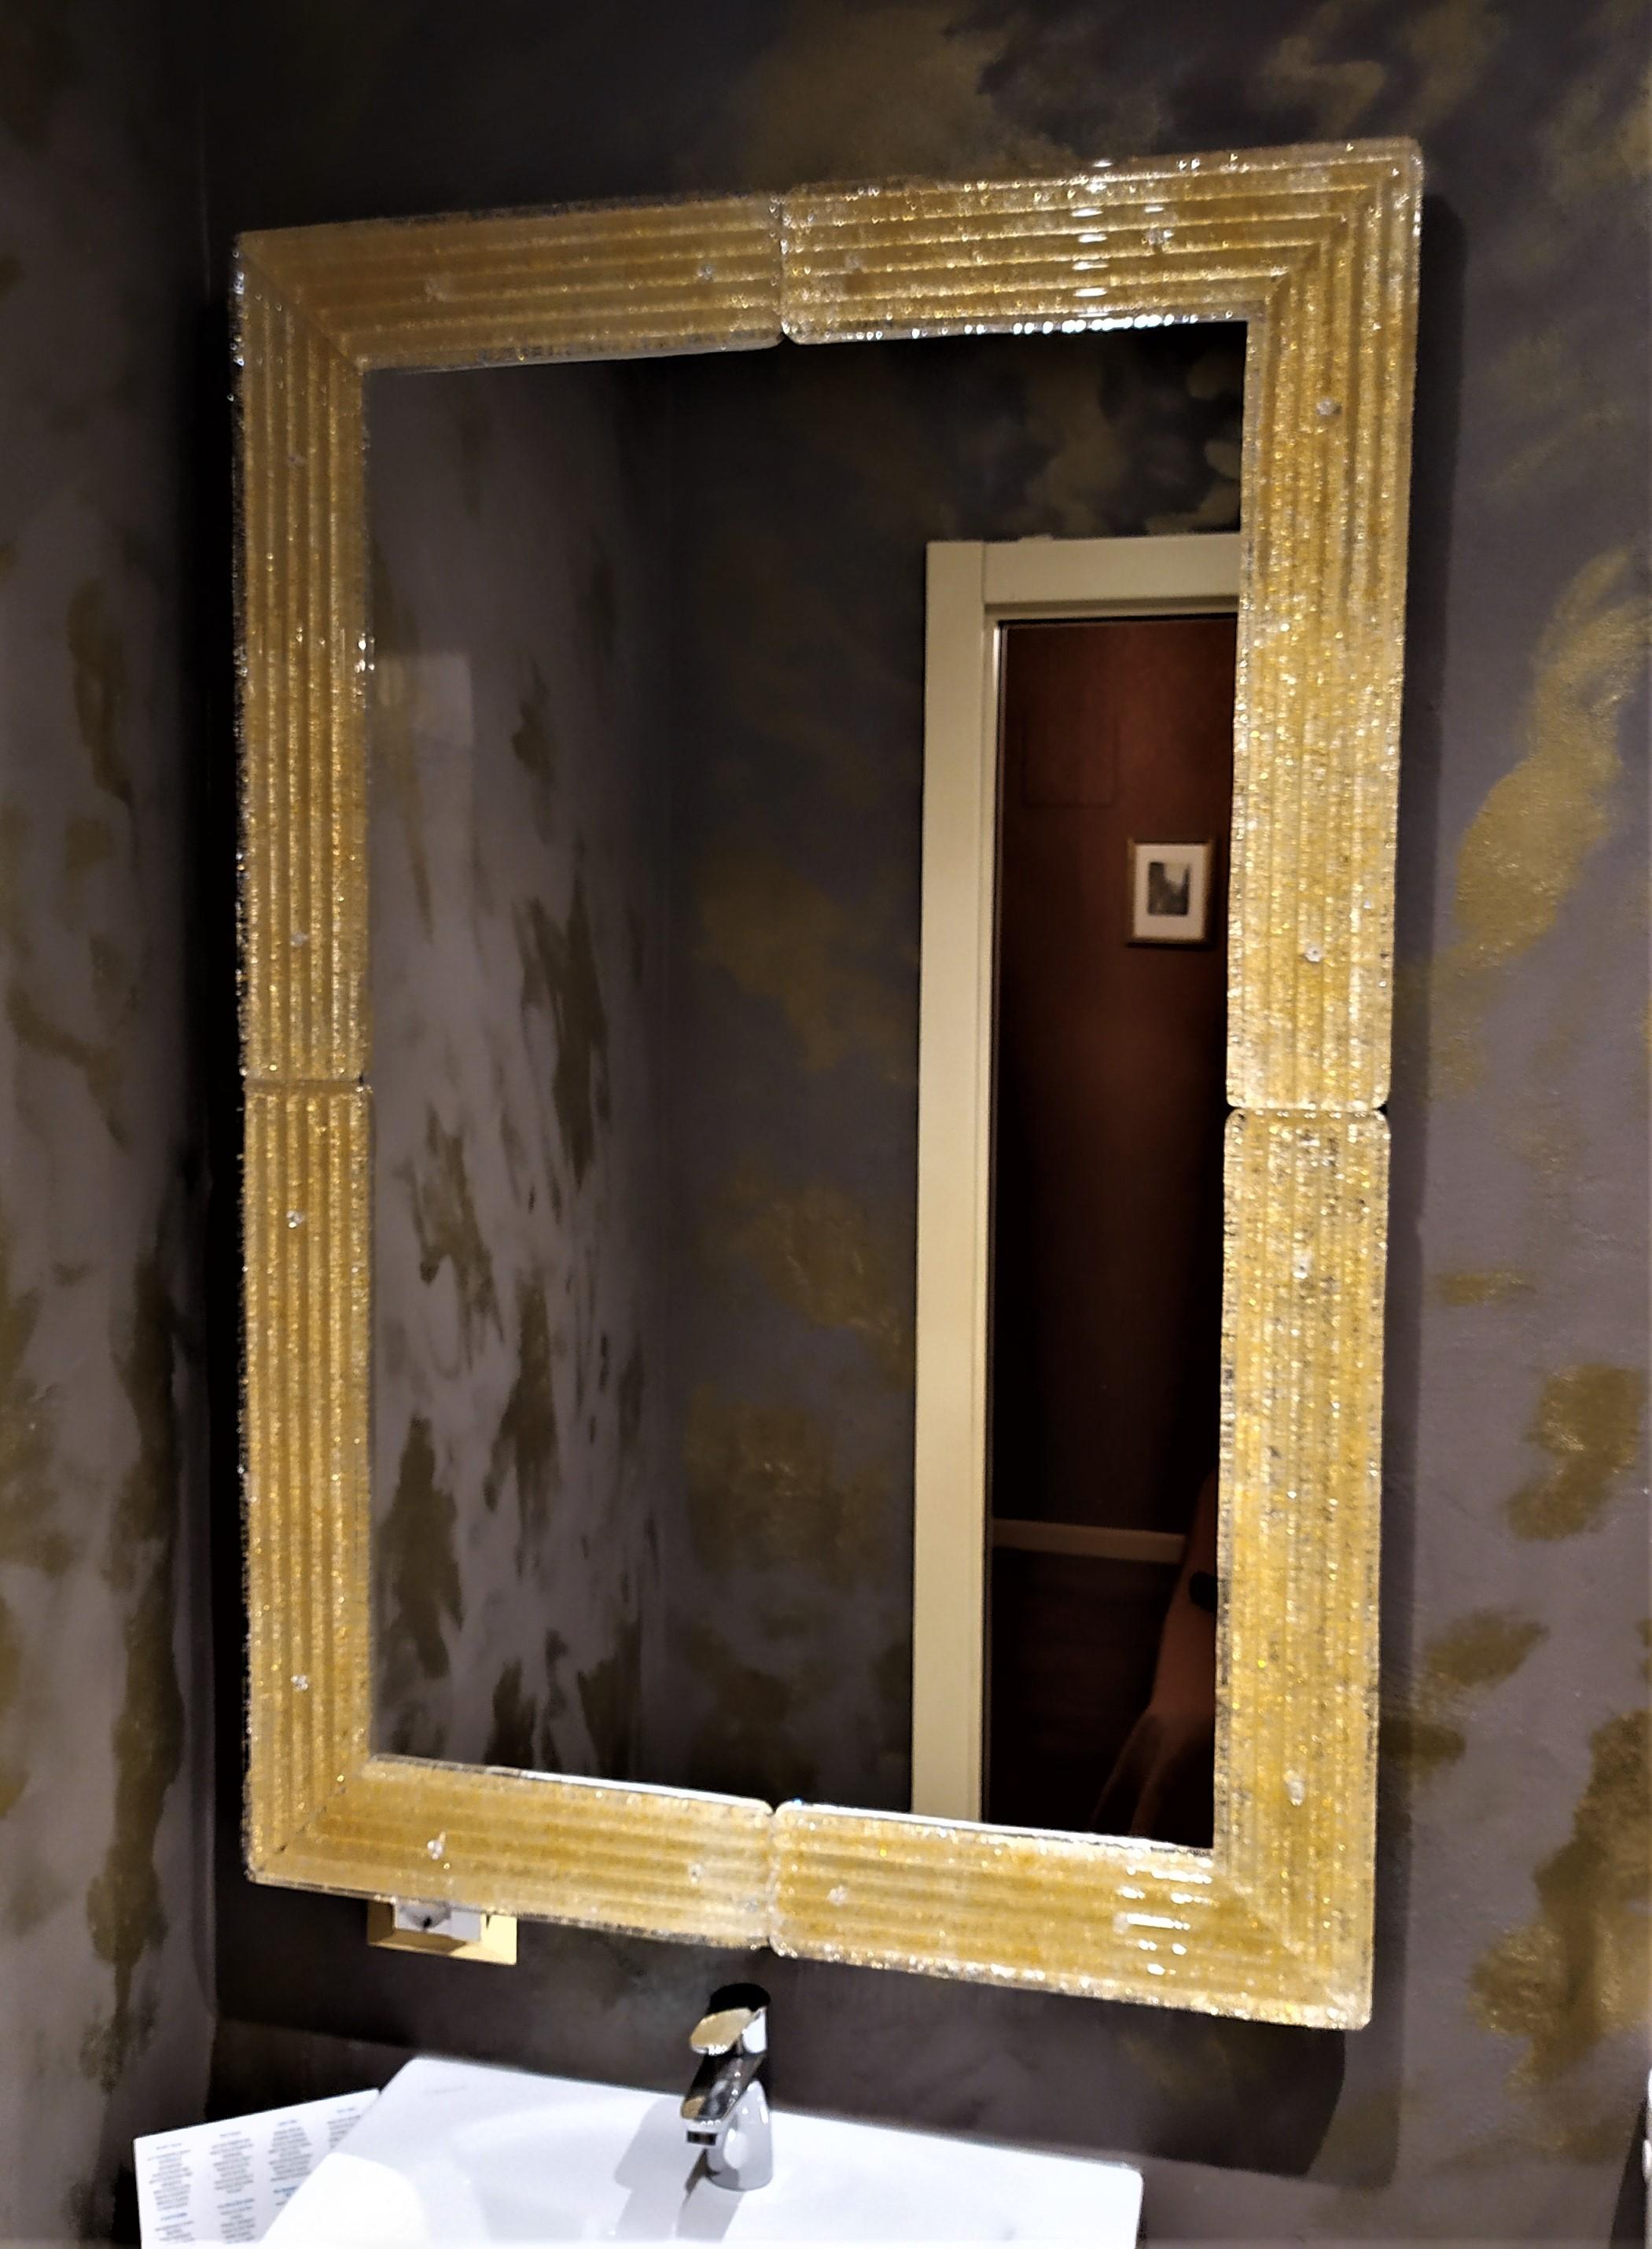 Miroir de style contemporain du 21ème siècle, avec le luxueux cadre en verre de Murano produit selon les anciennes traditions et procédés muranais, cadre qui est ensuite coupé, façonné et poli dans les coins, percé et fixé à la structure avec des